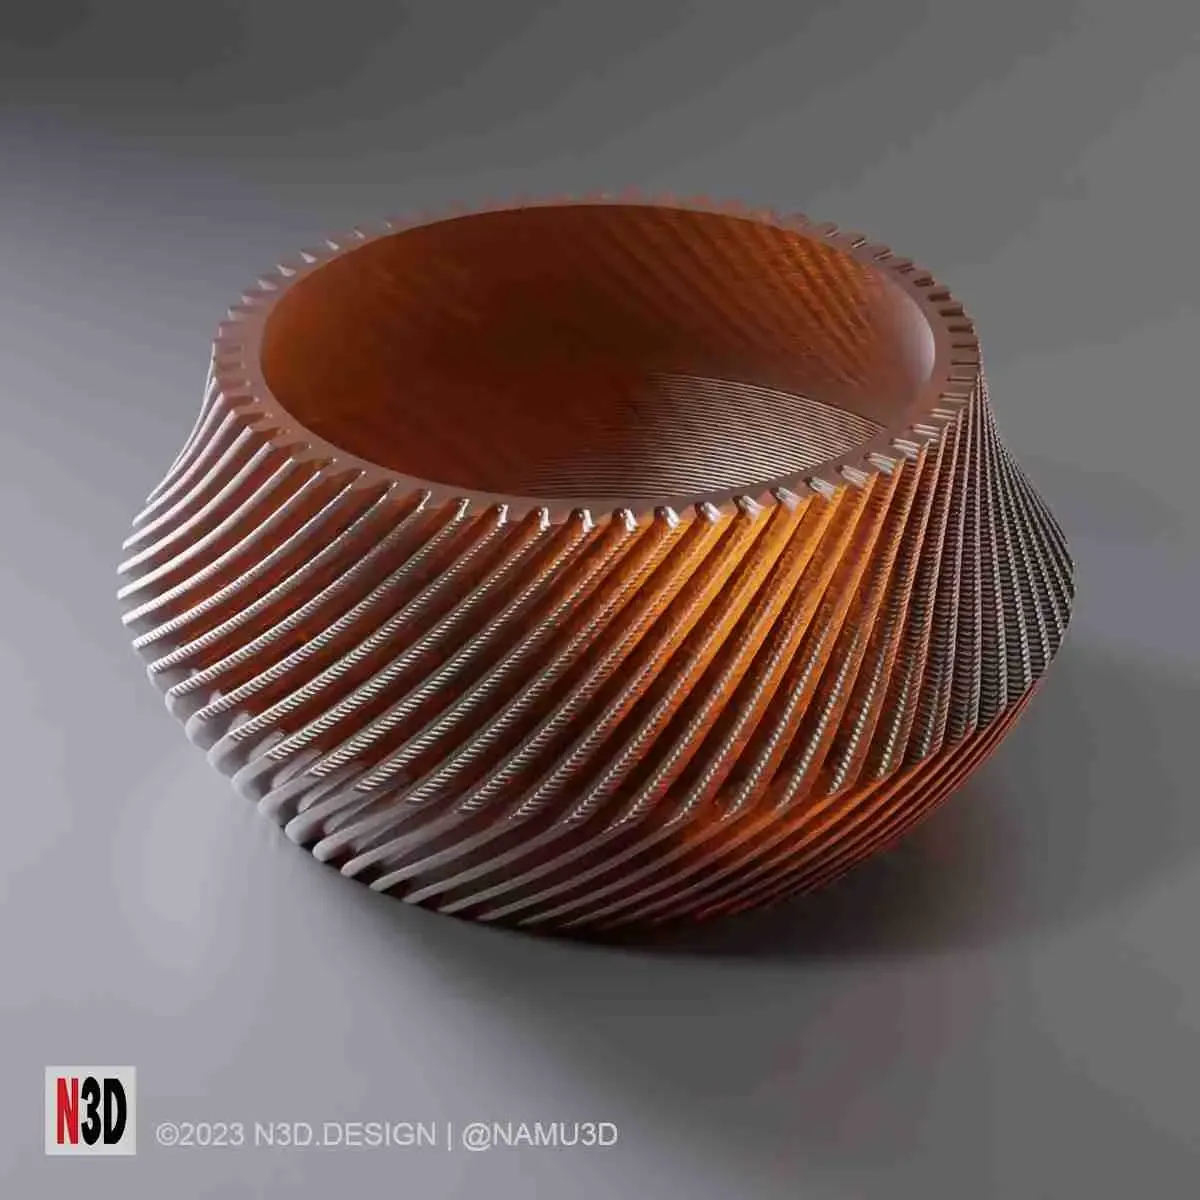 Vase 0013 B Twisted bowl vase